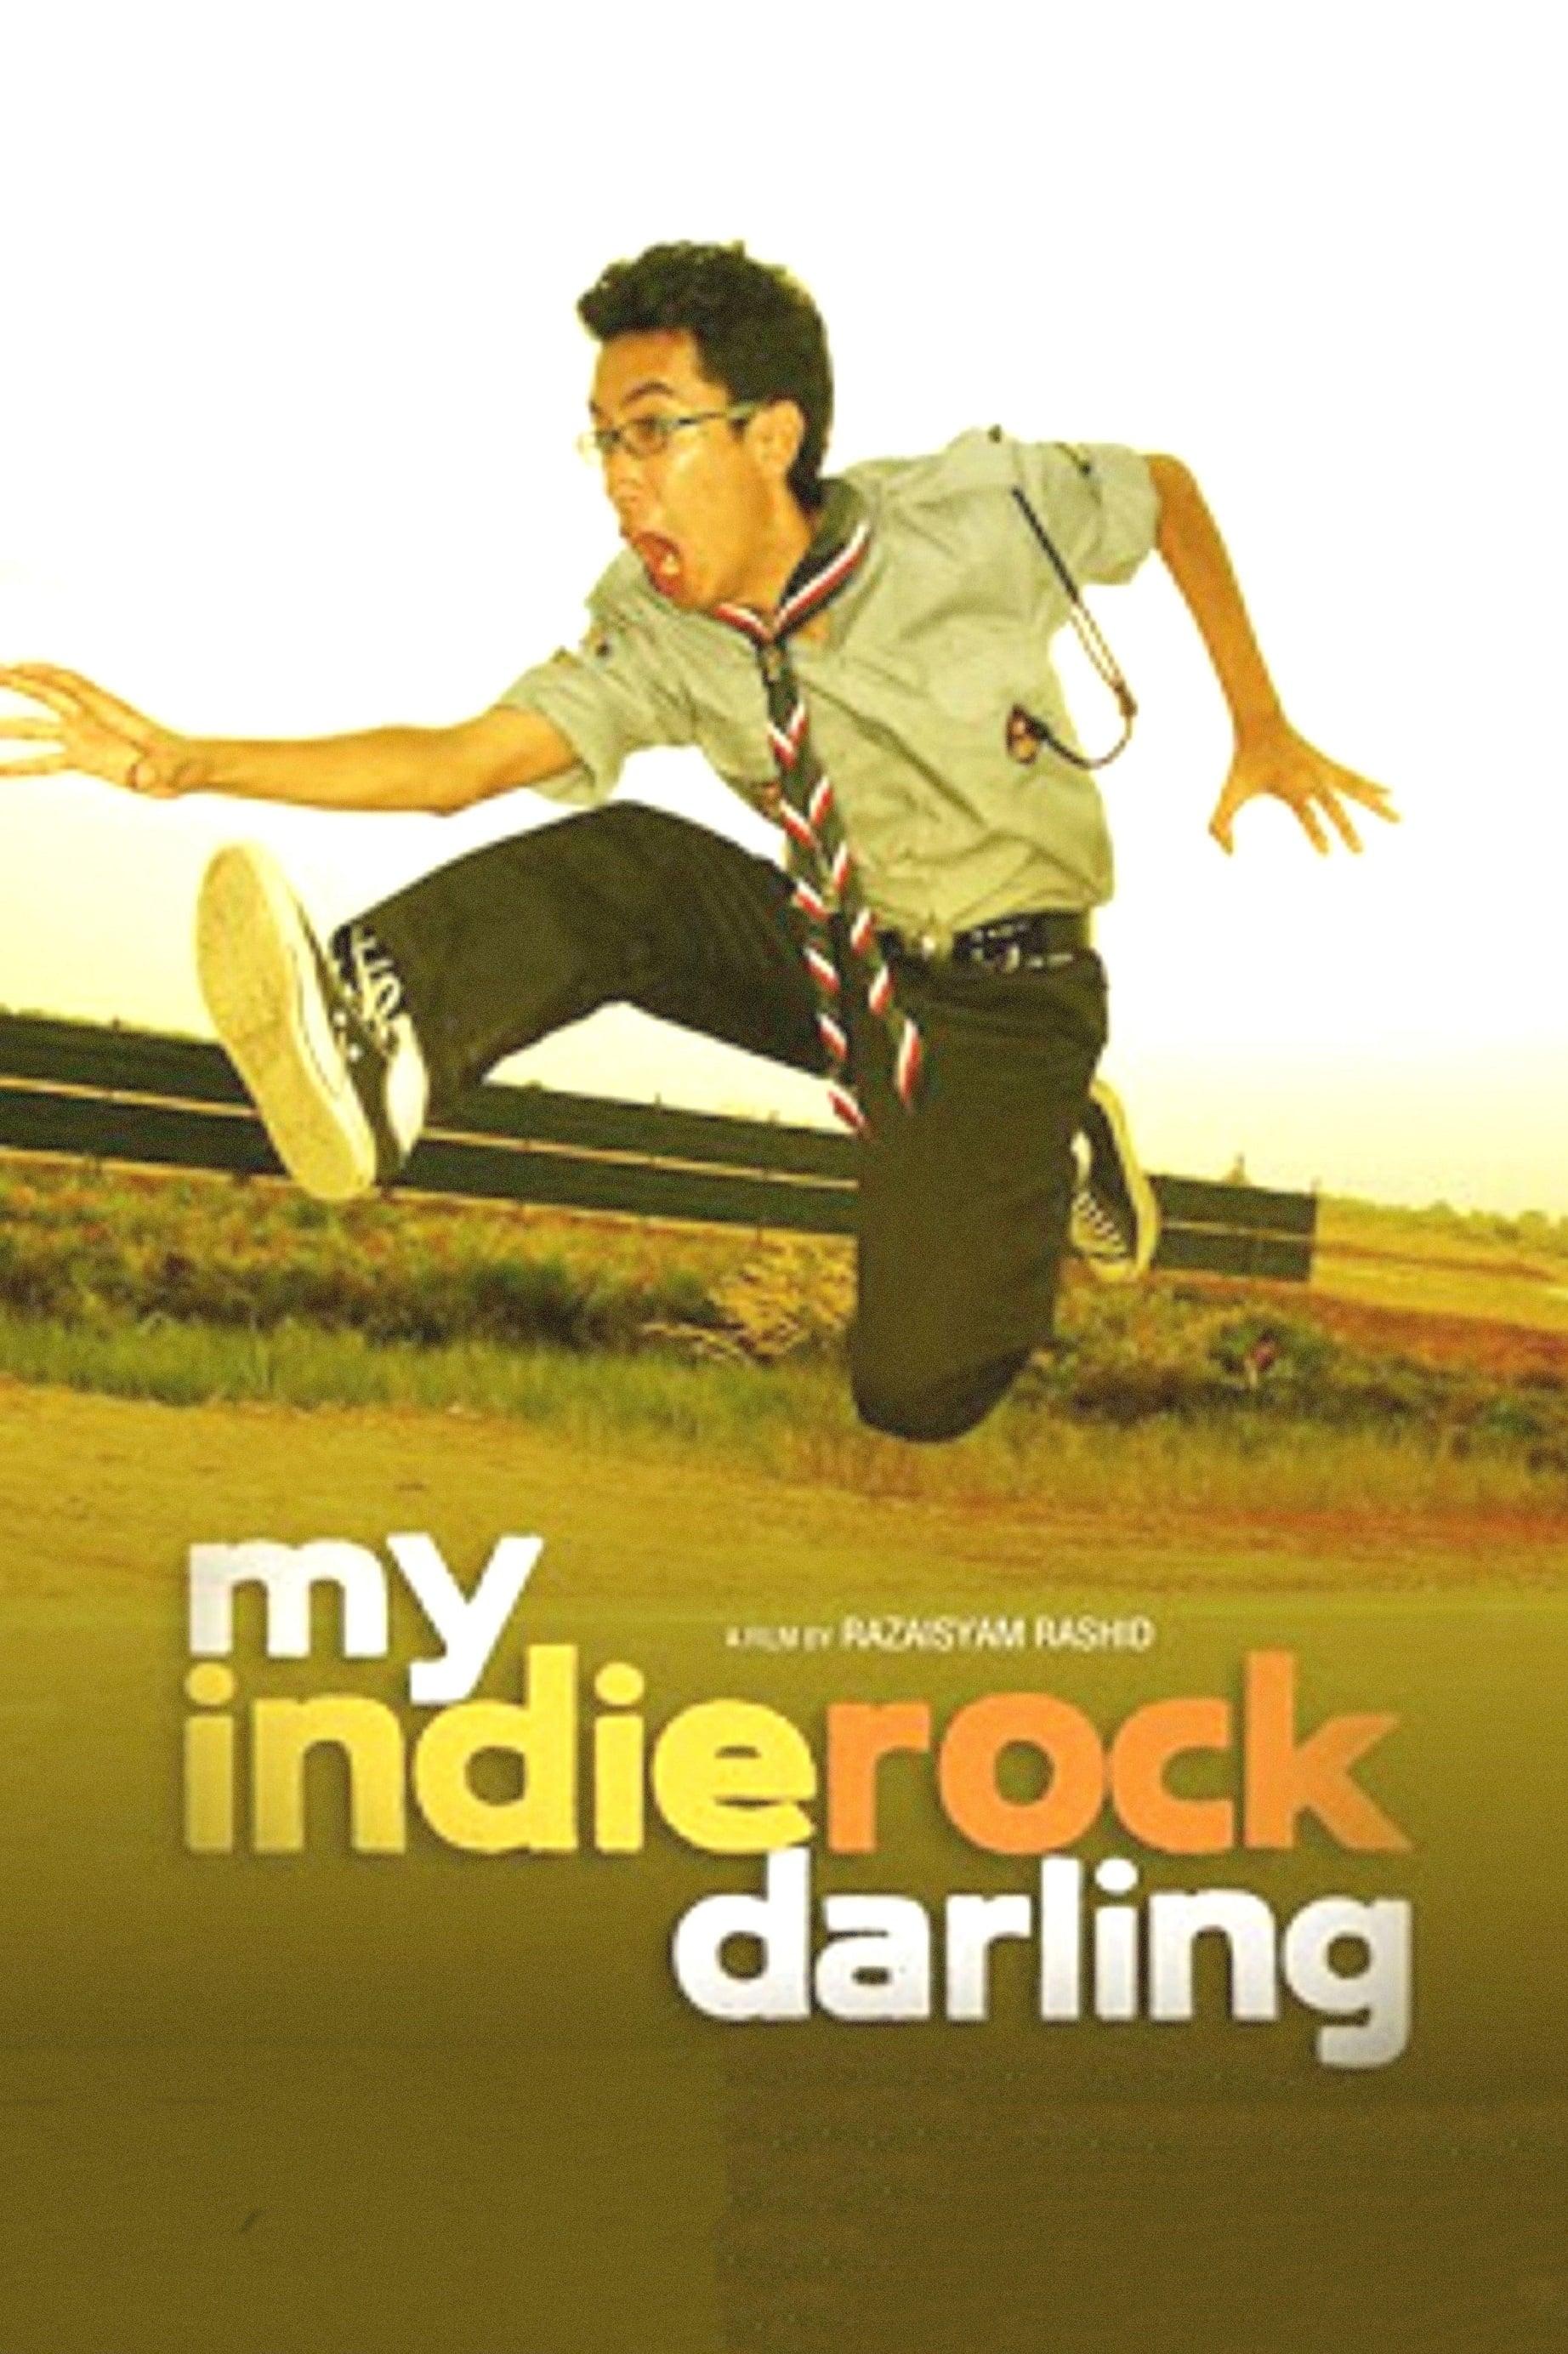 My Indie Rock Darling poster